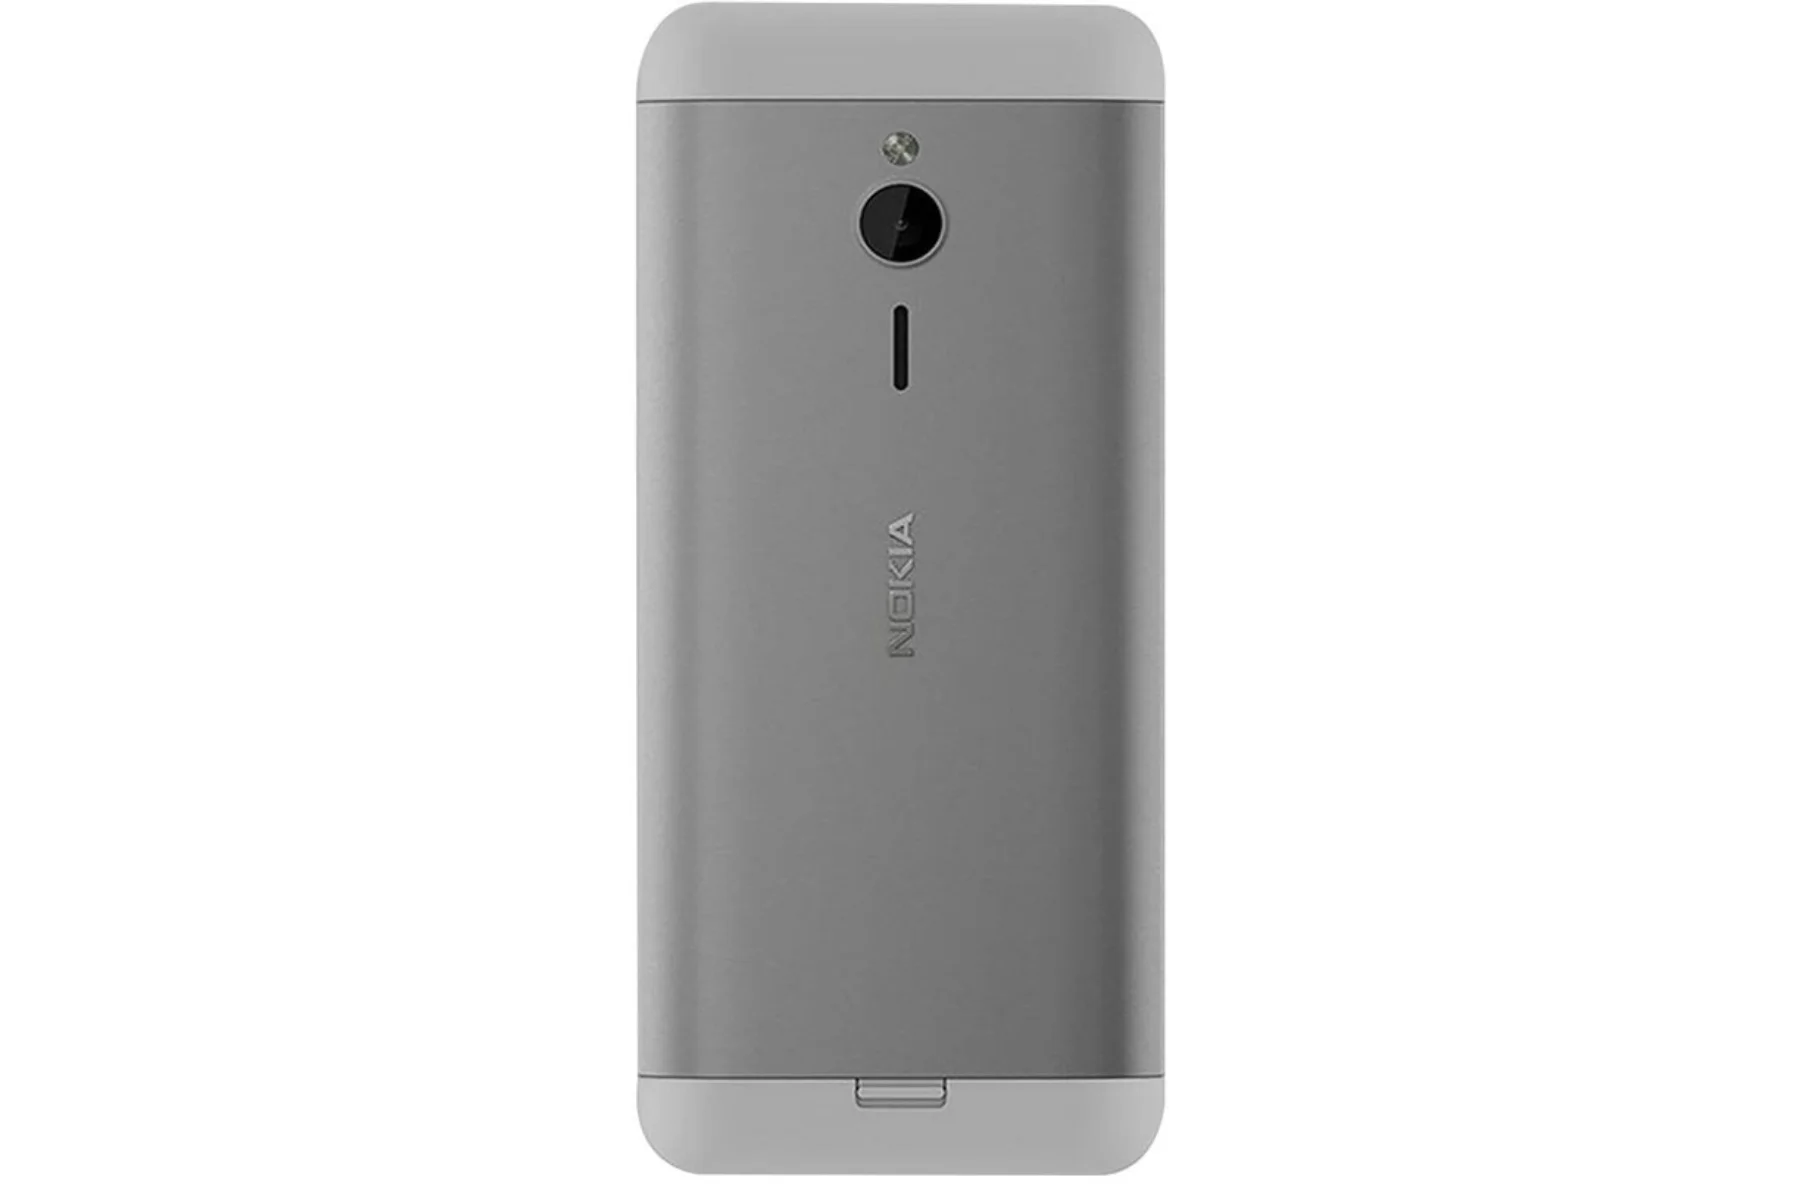 Mobilný telefón Nokia 230 DS White/Silver dizajn